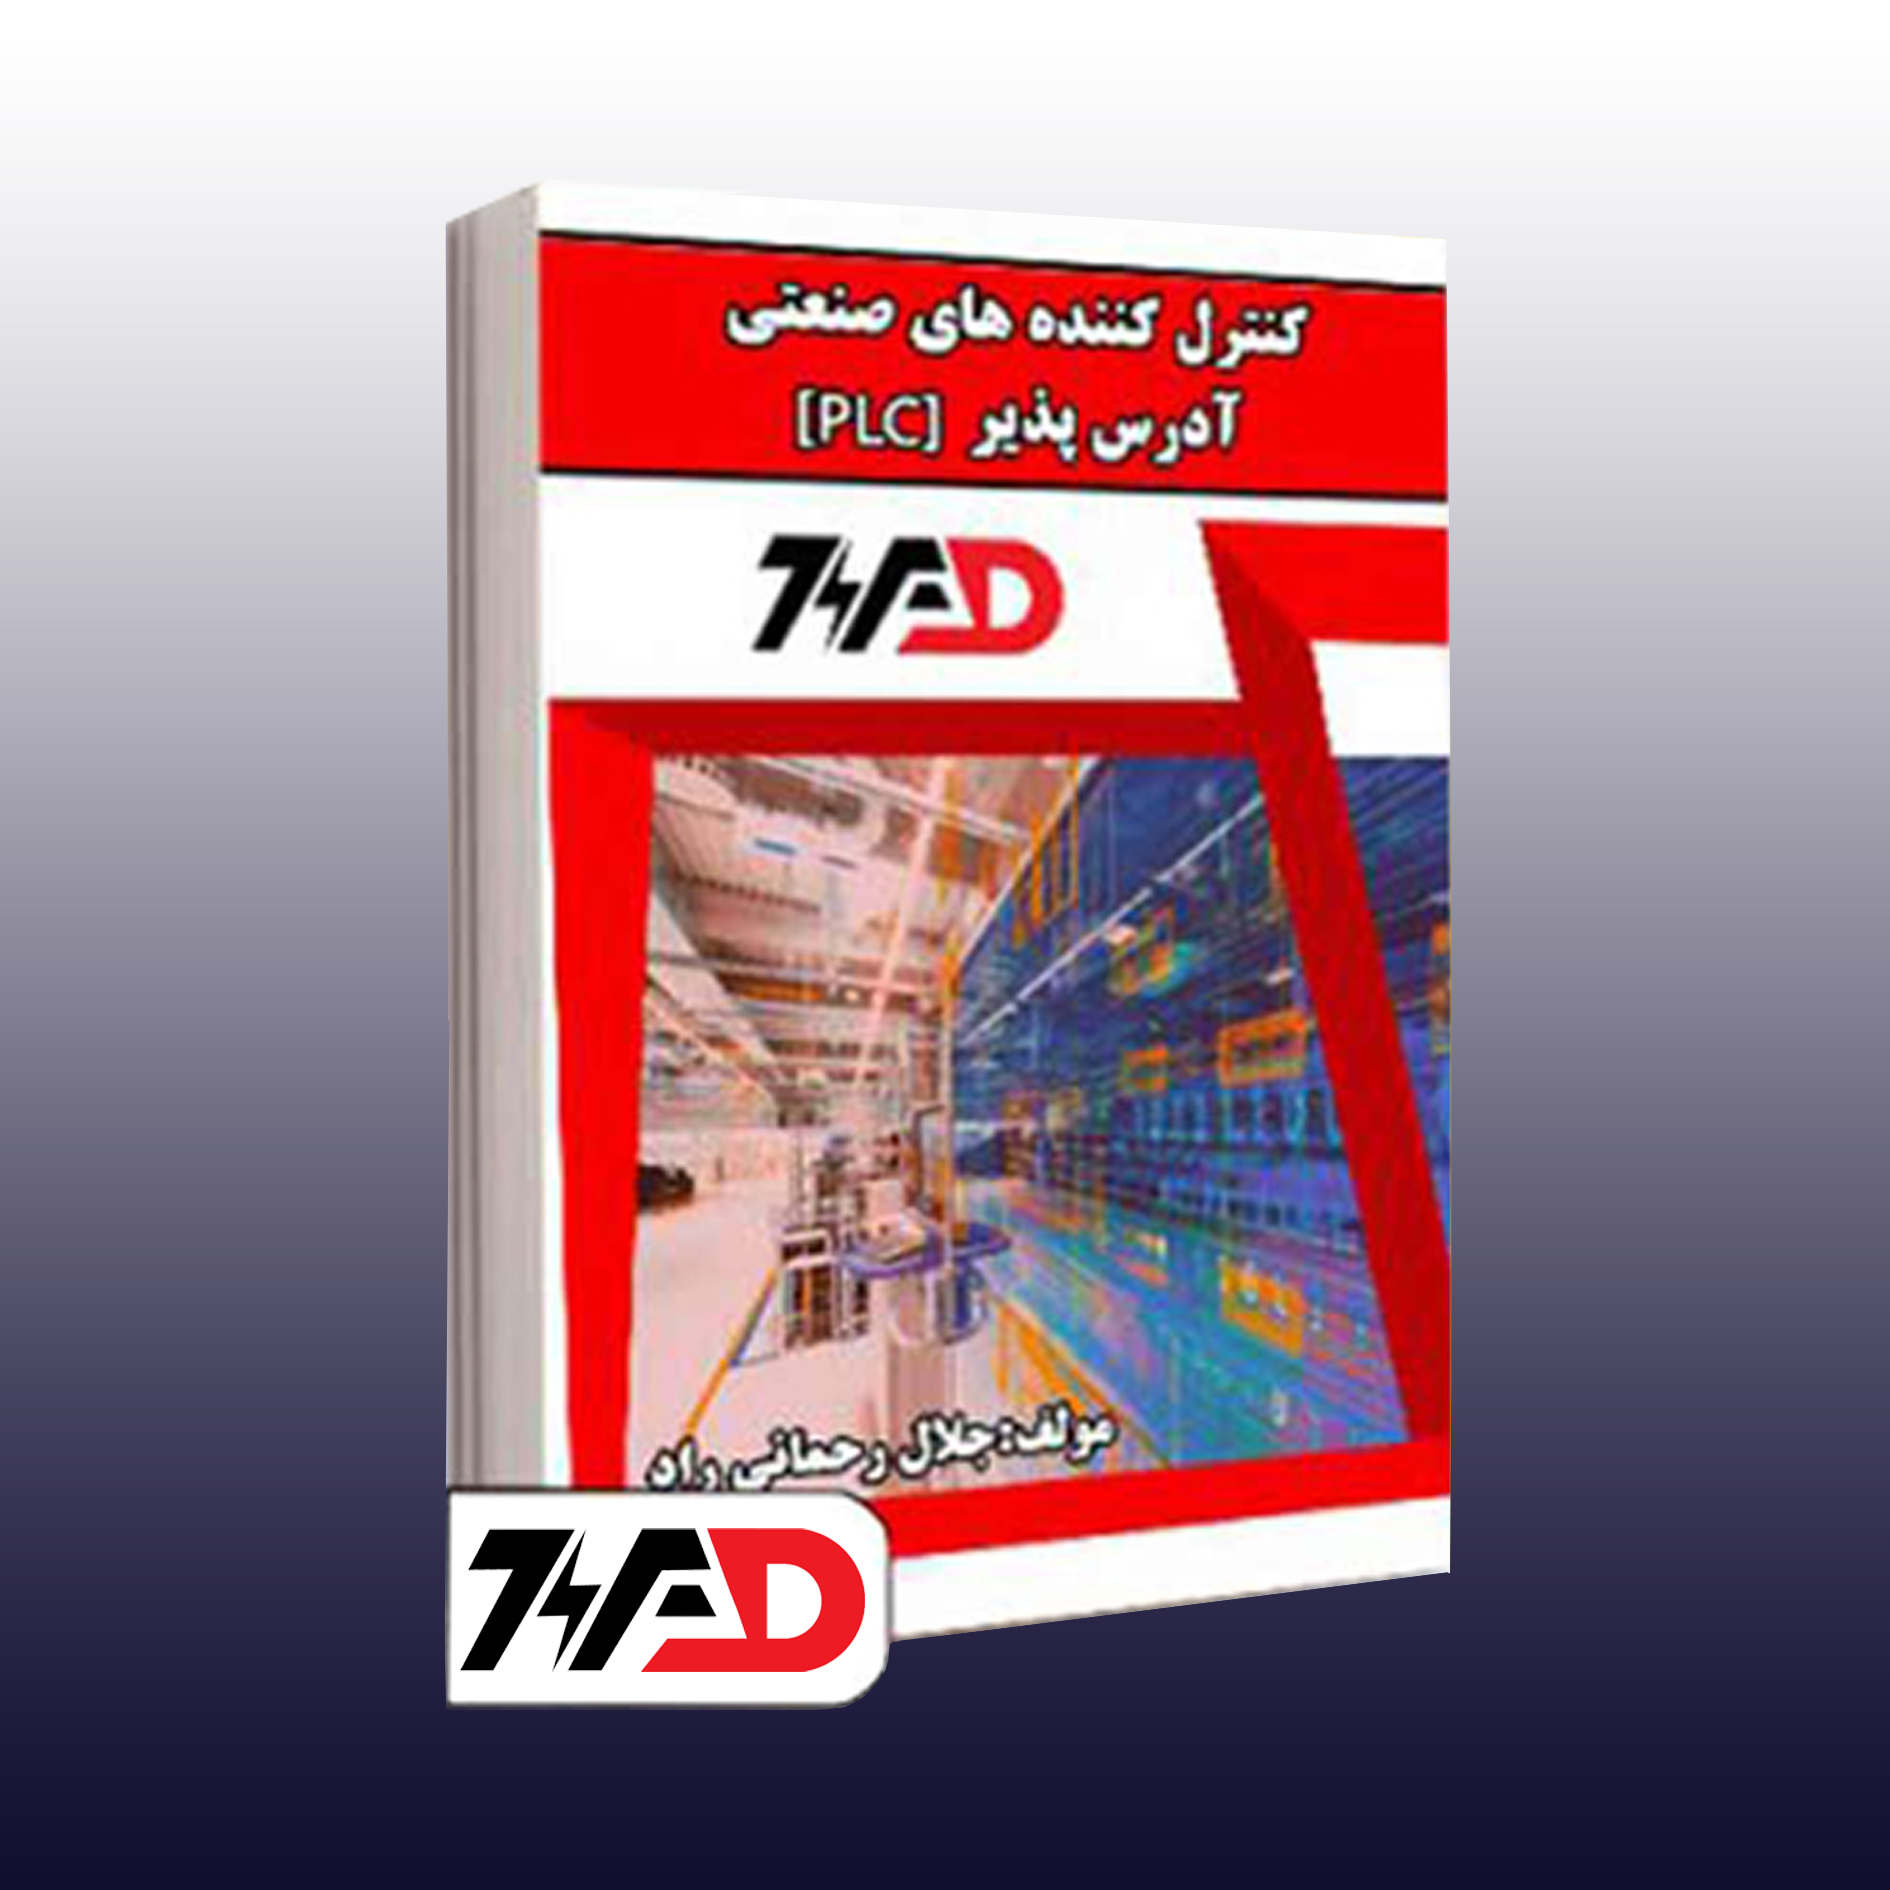 کتاب کنترل کننده های آدرس پذیر آموزشگاه فنی و حرفه ای ویراد